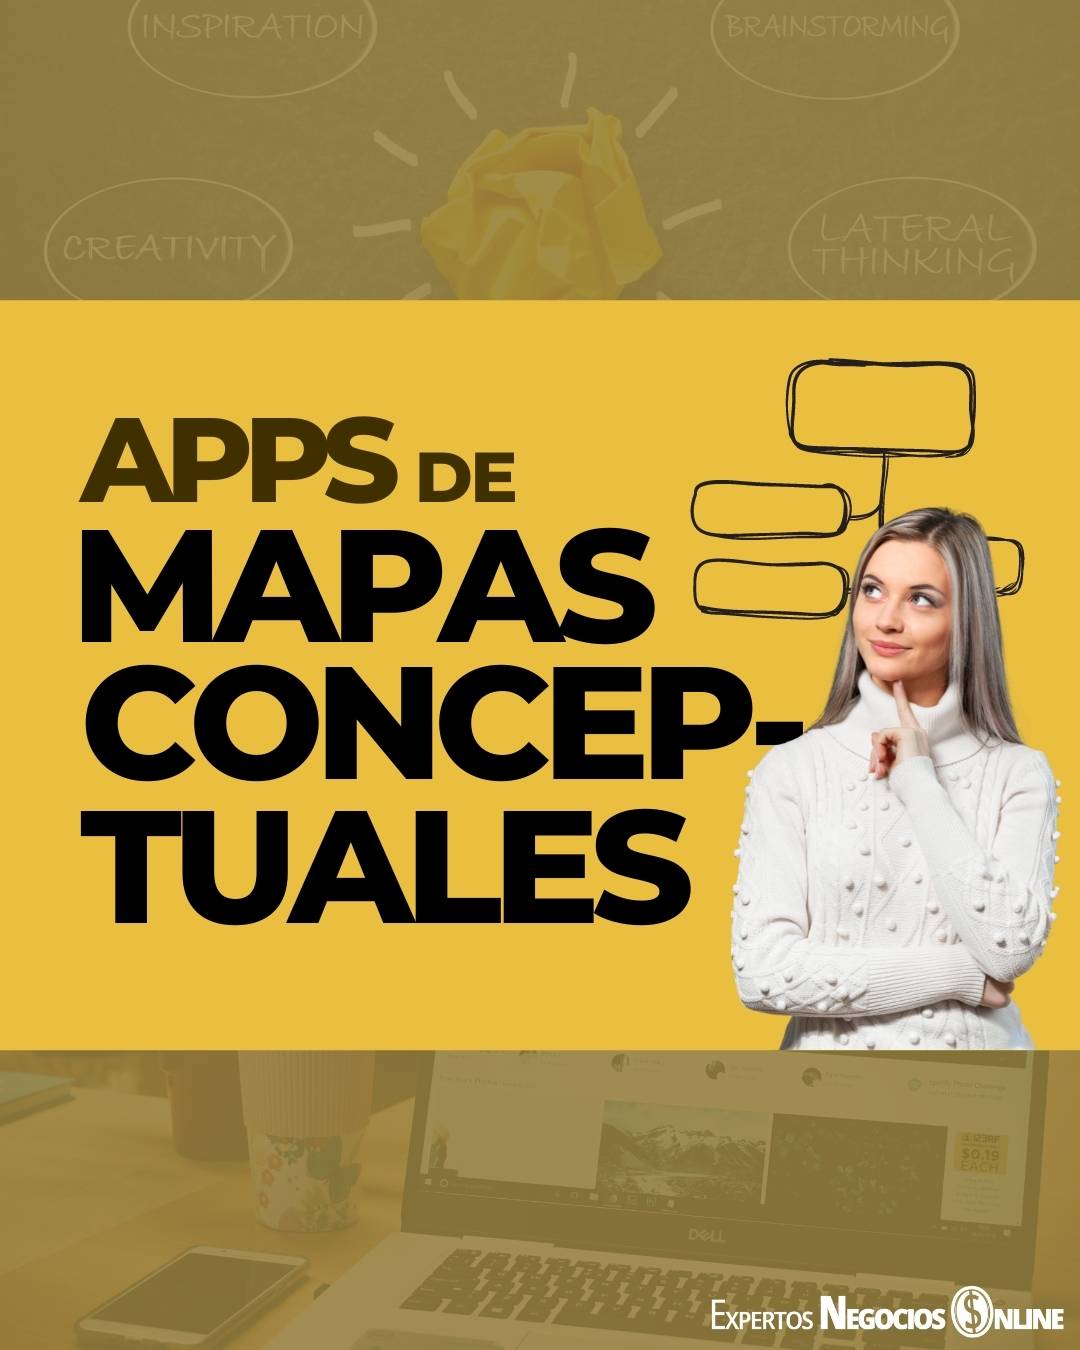 Apps para hacer mapas conceptuales y mentales